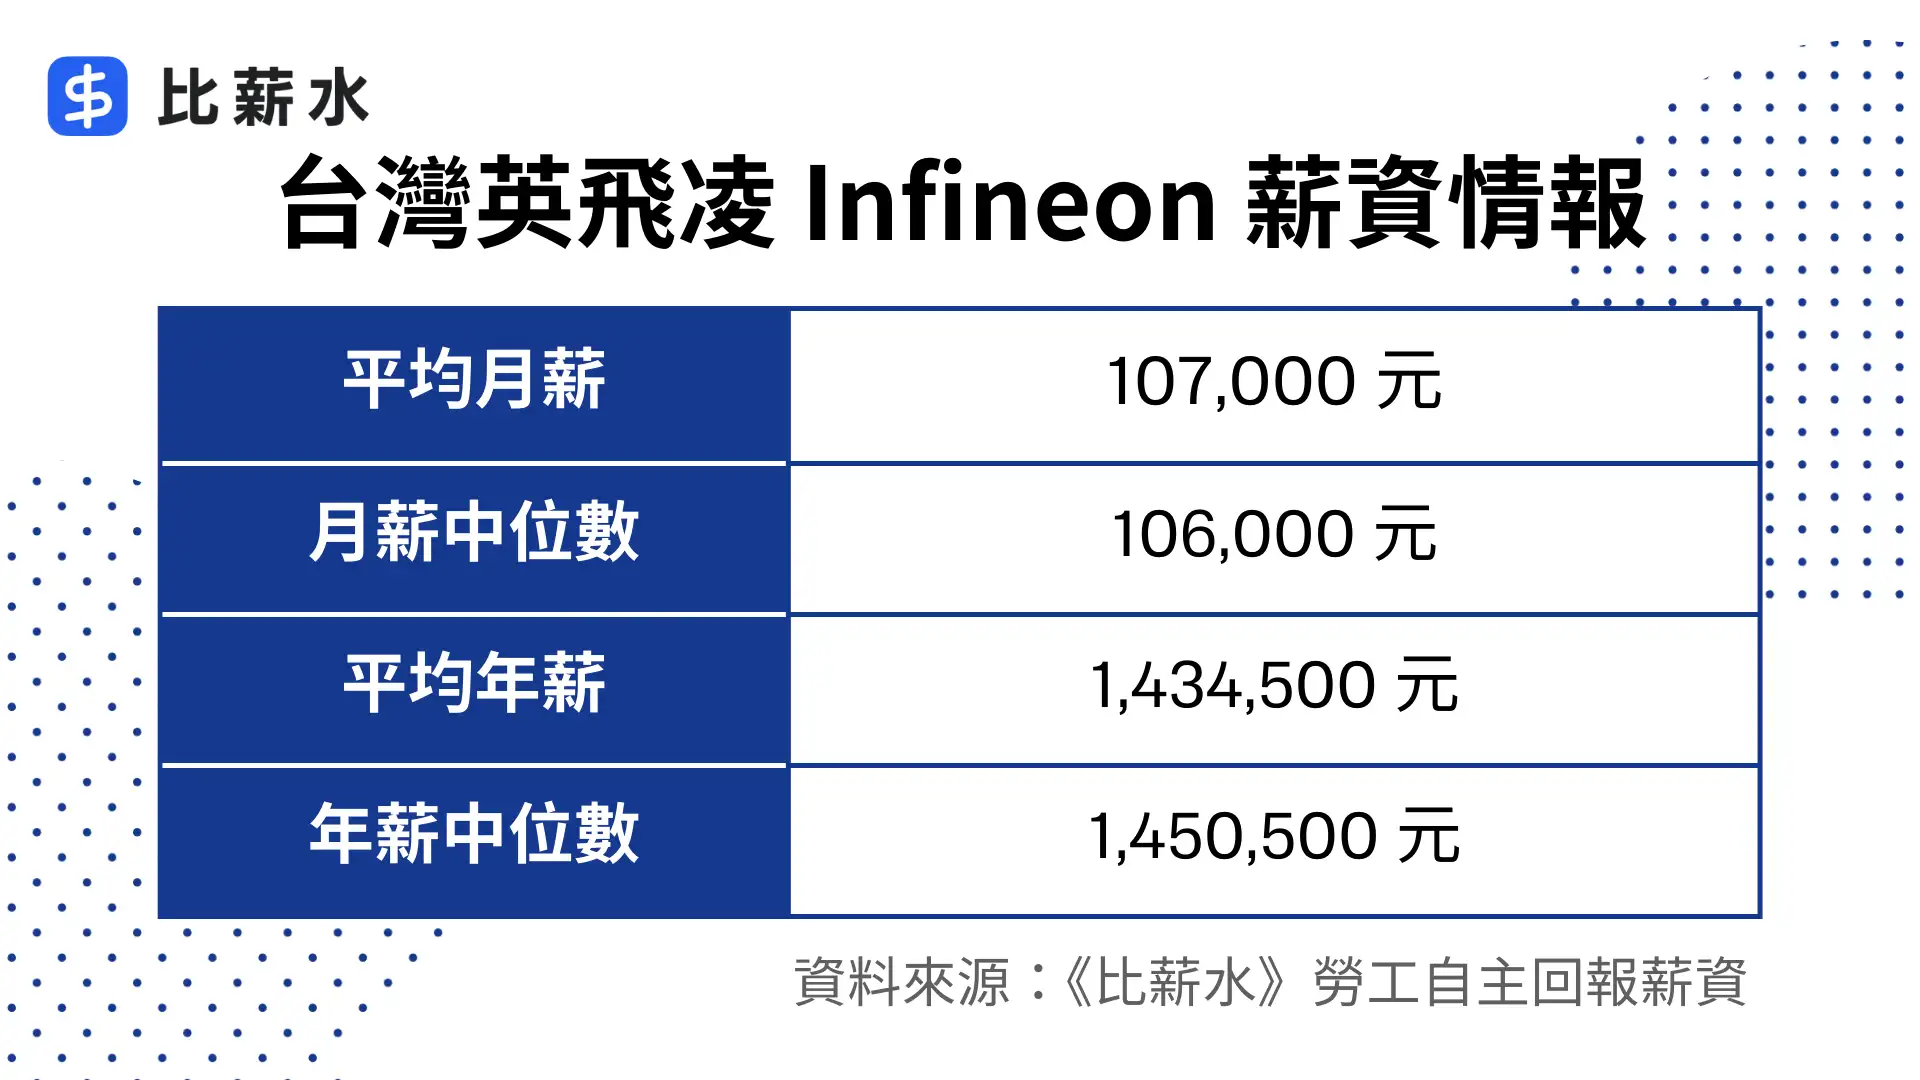 英飛凌-Infineon-薪水-福利-平均月薪-平均年薪-中位數-表格